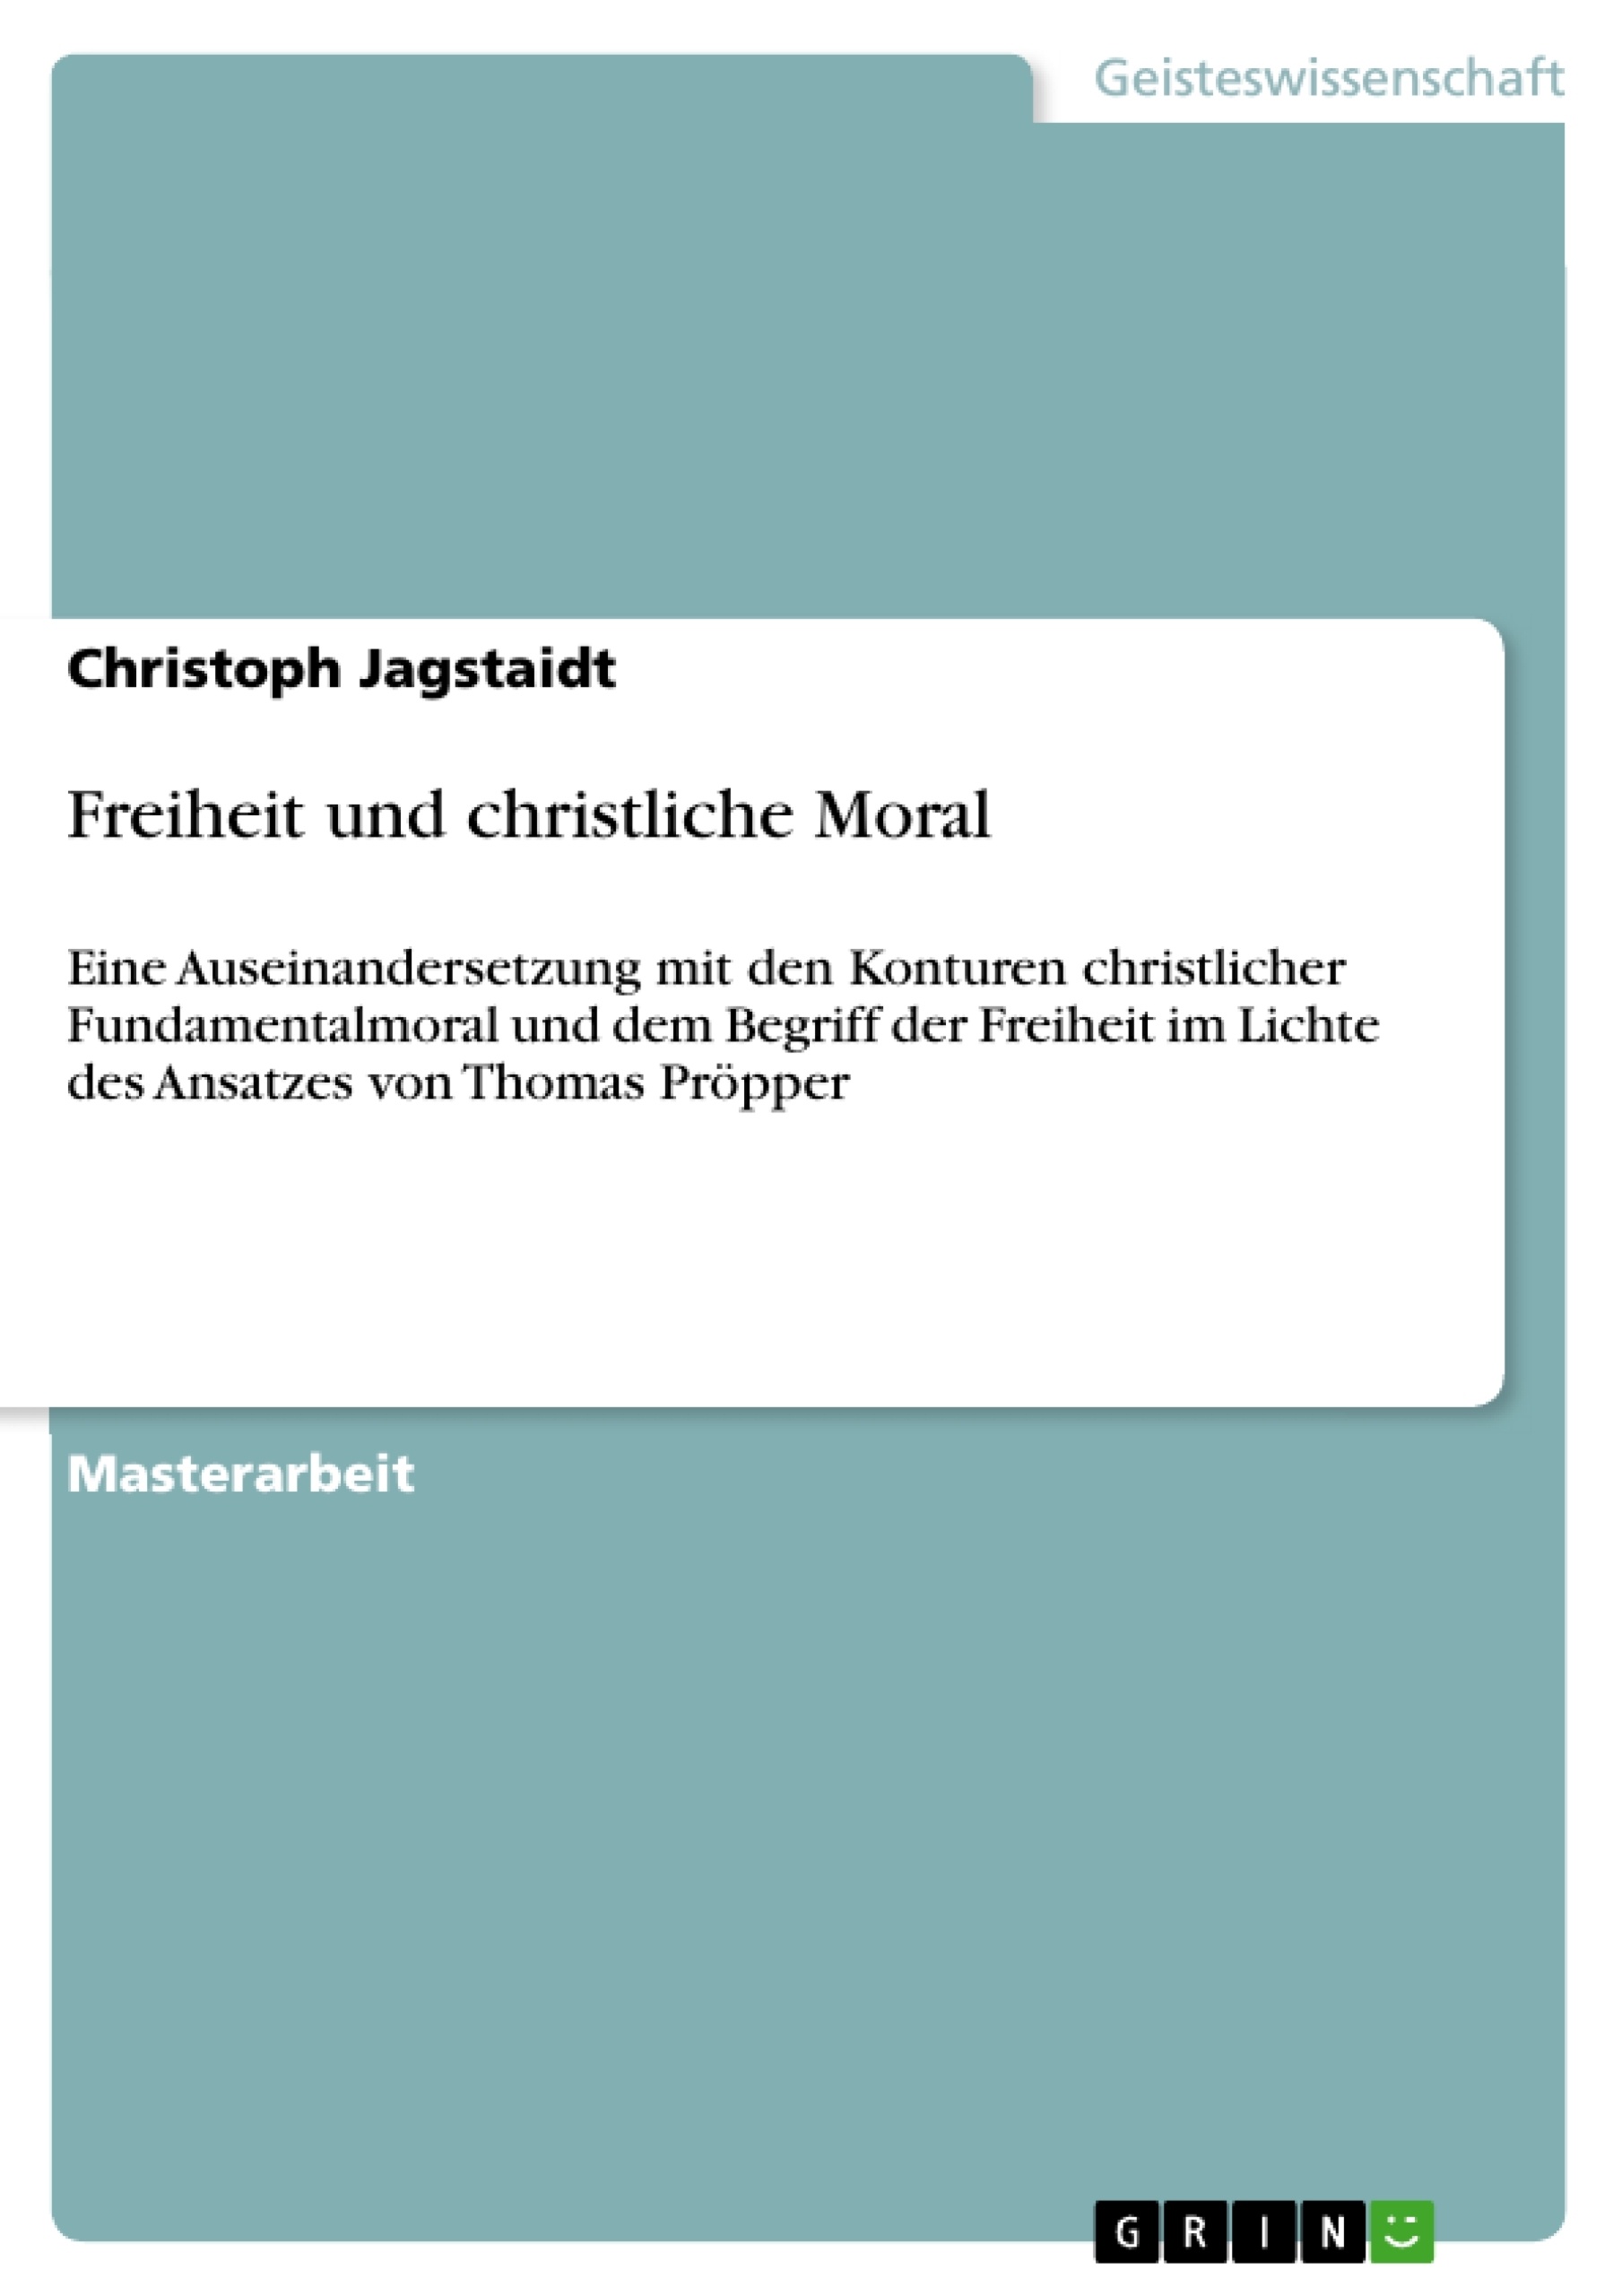 Title: Freiheit und christliche Moral